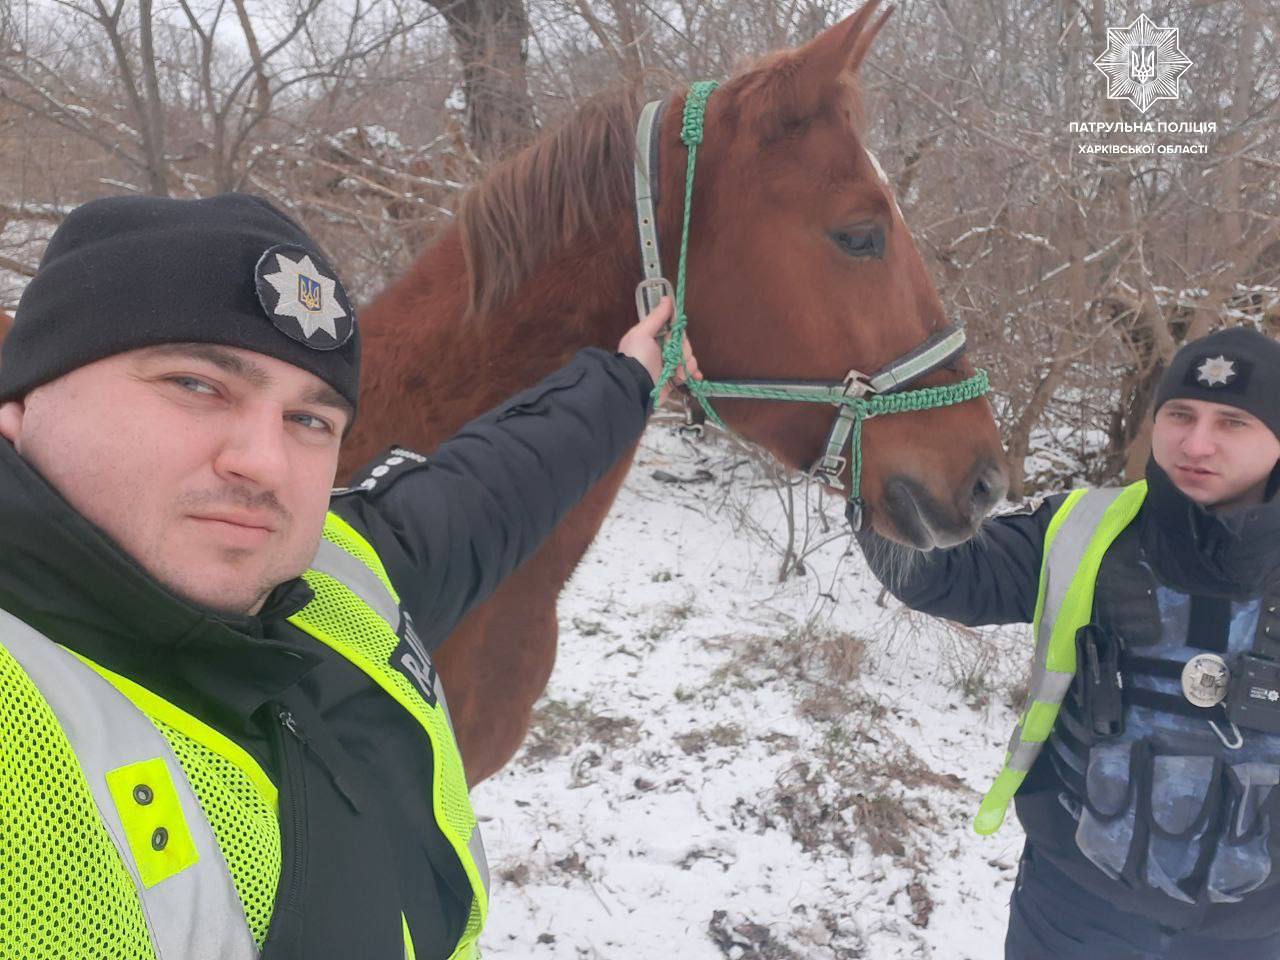 Втік з конюшні: харківські патрульні повернули коня власниці